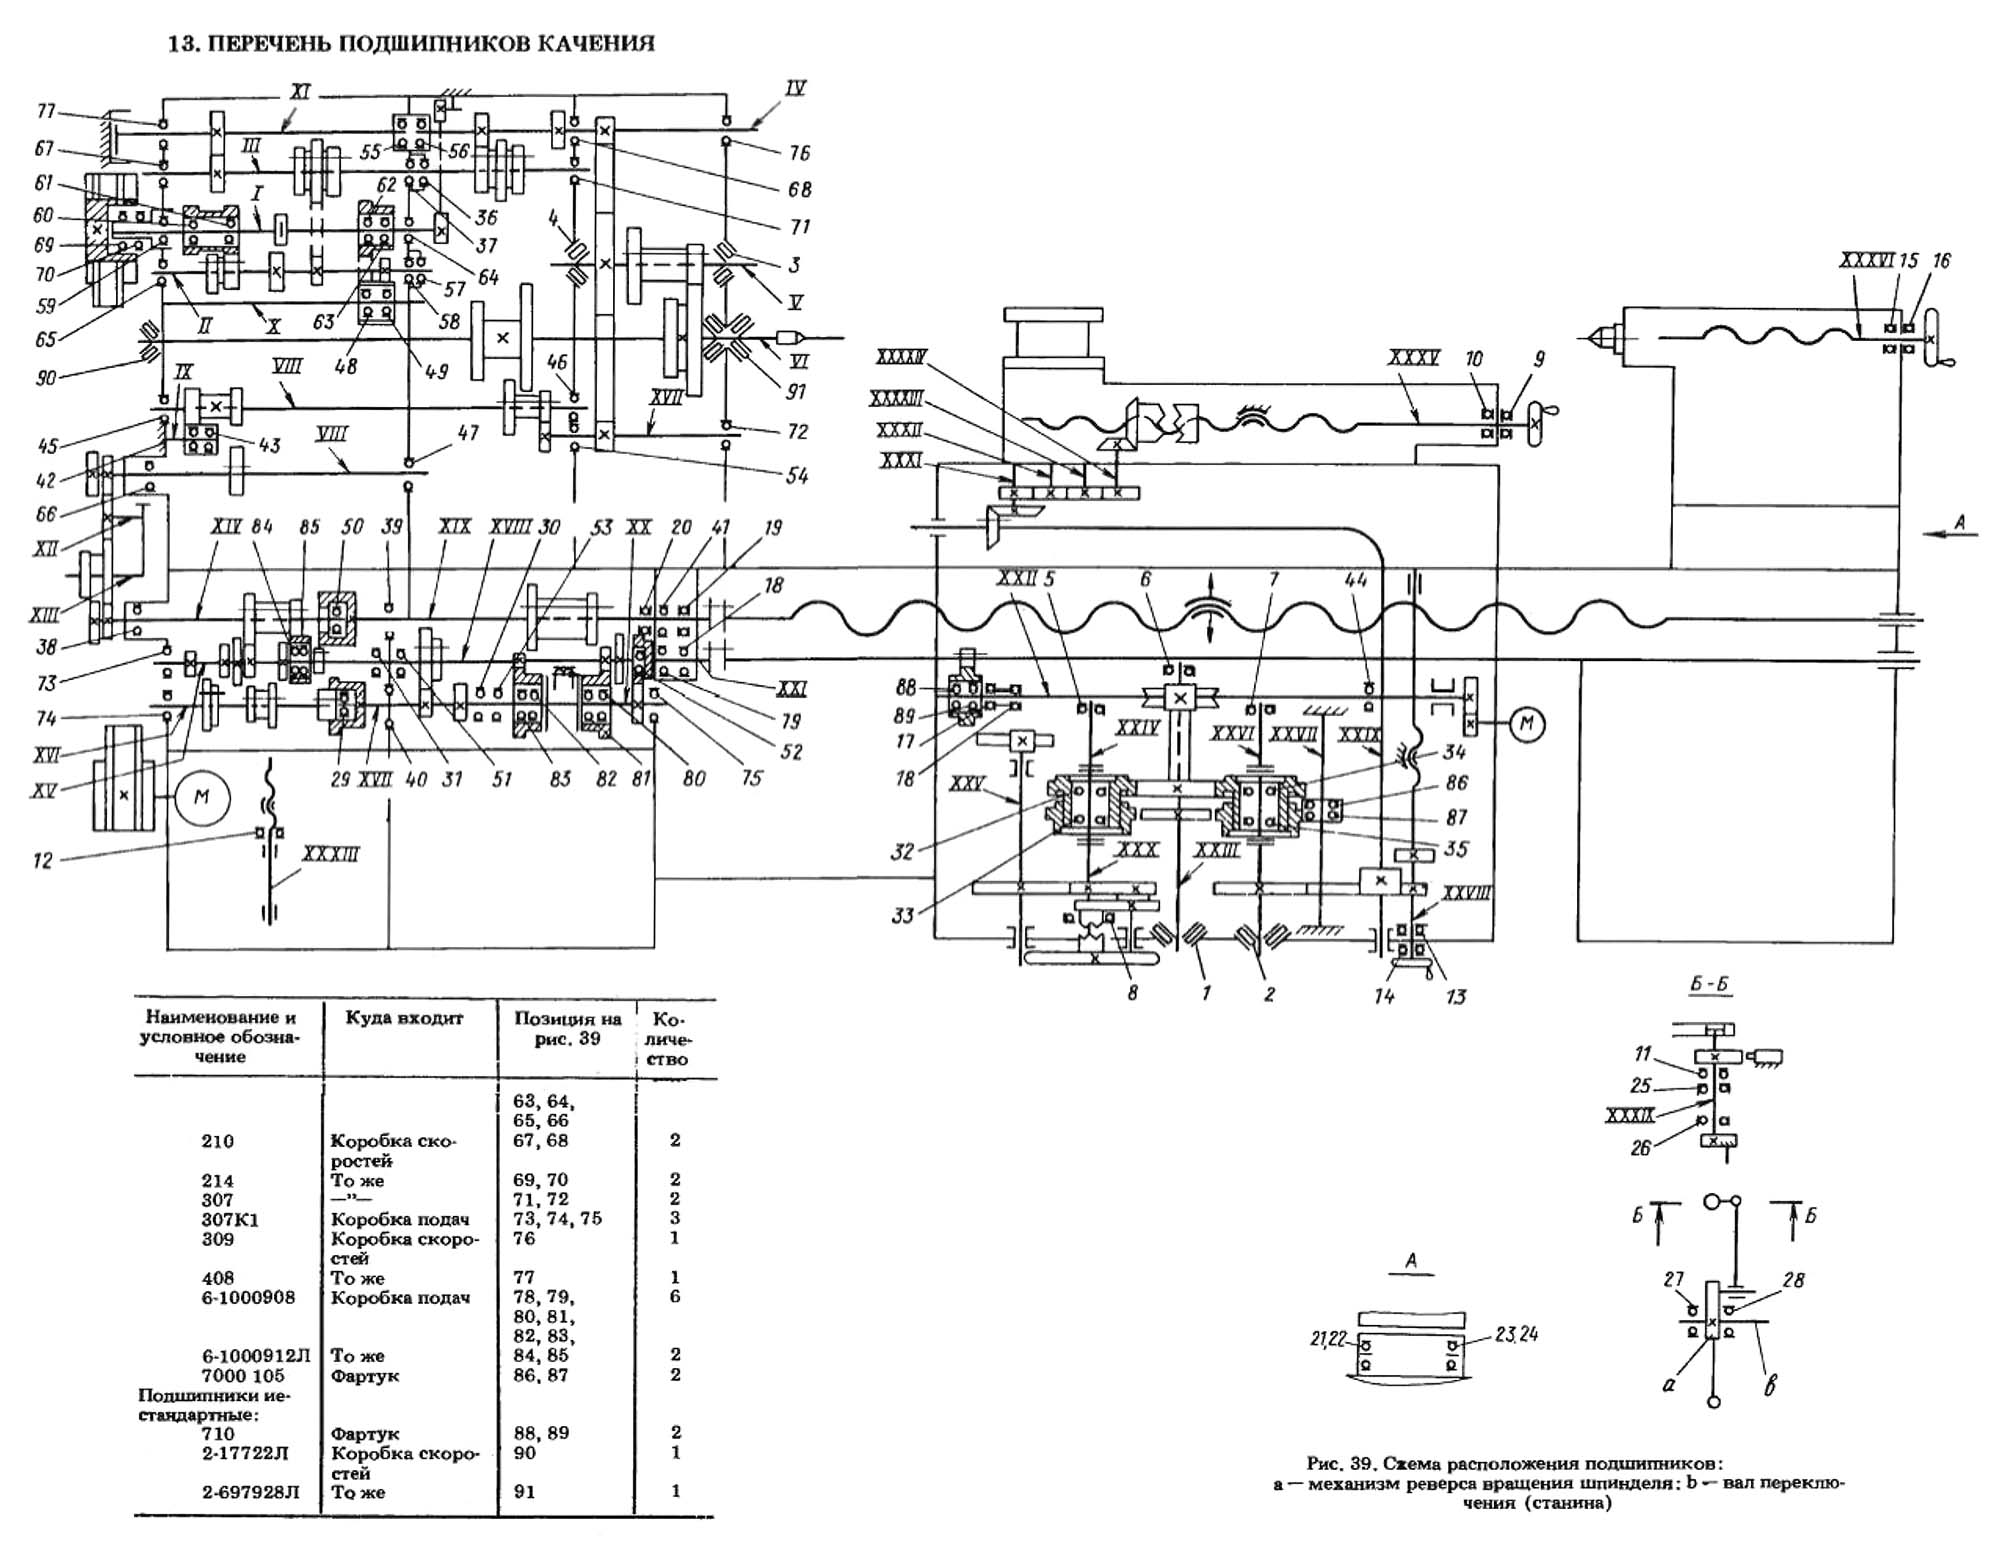 Токарный станок 1м61: технические характеристики и устройство